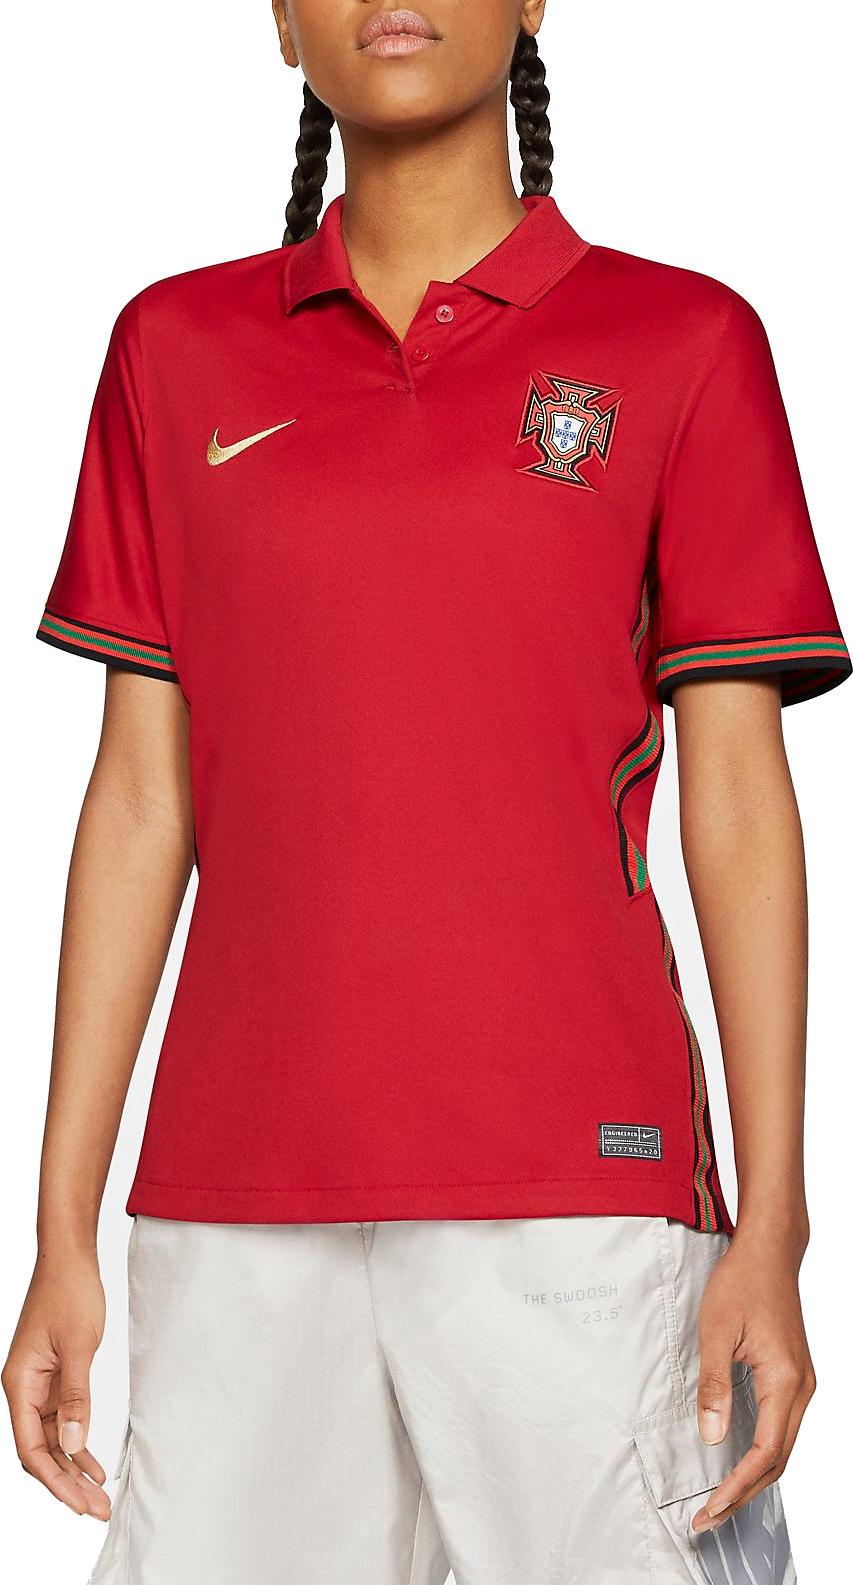 Dámský fotbalový dres s krátkým rukávem Nike Portugal 2020